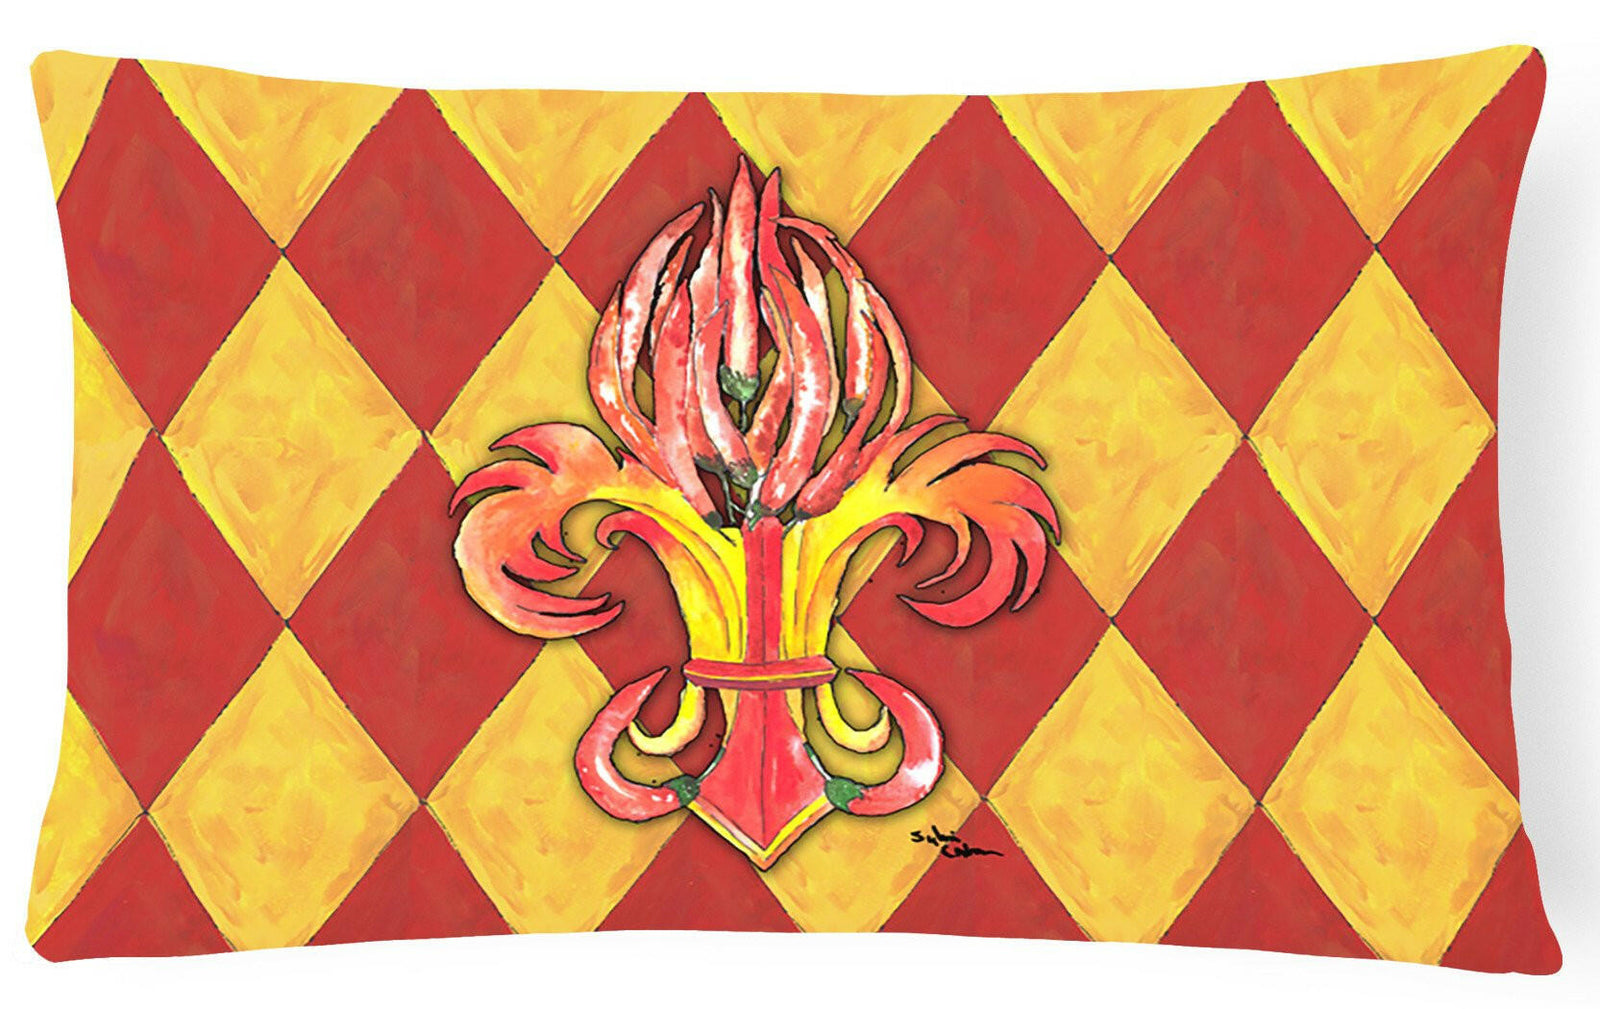 Peppers Fleur de lis   Canvas Fabric Decorative Pillow by Caroline's Treasures